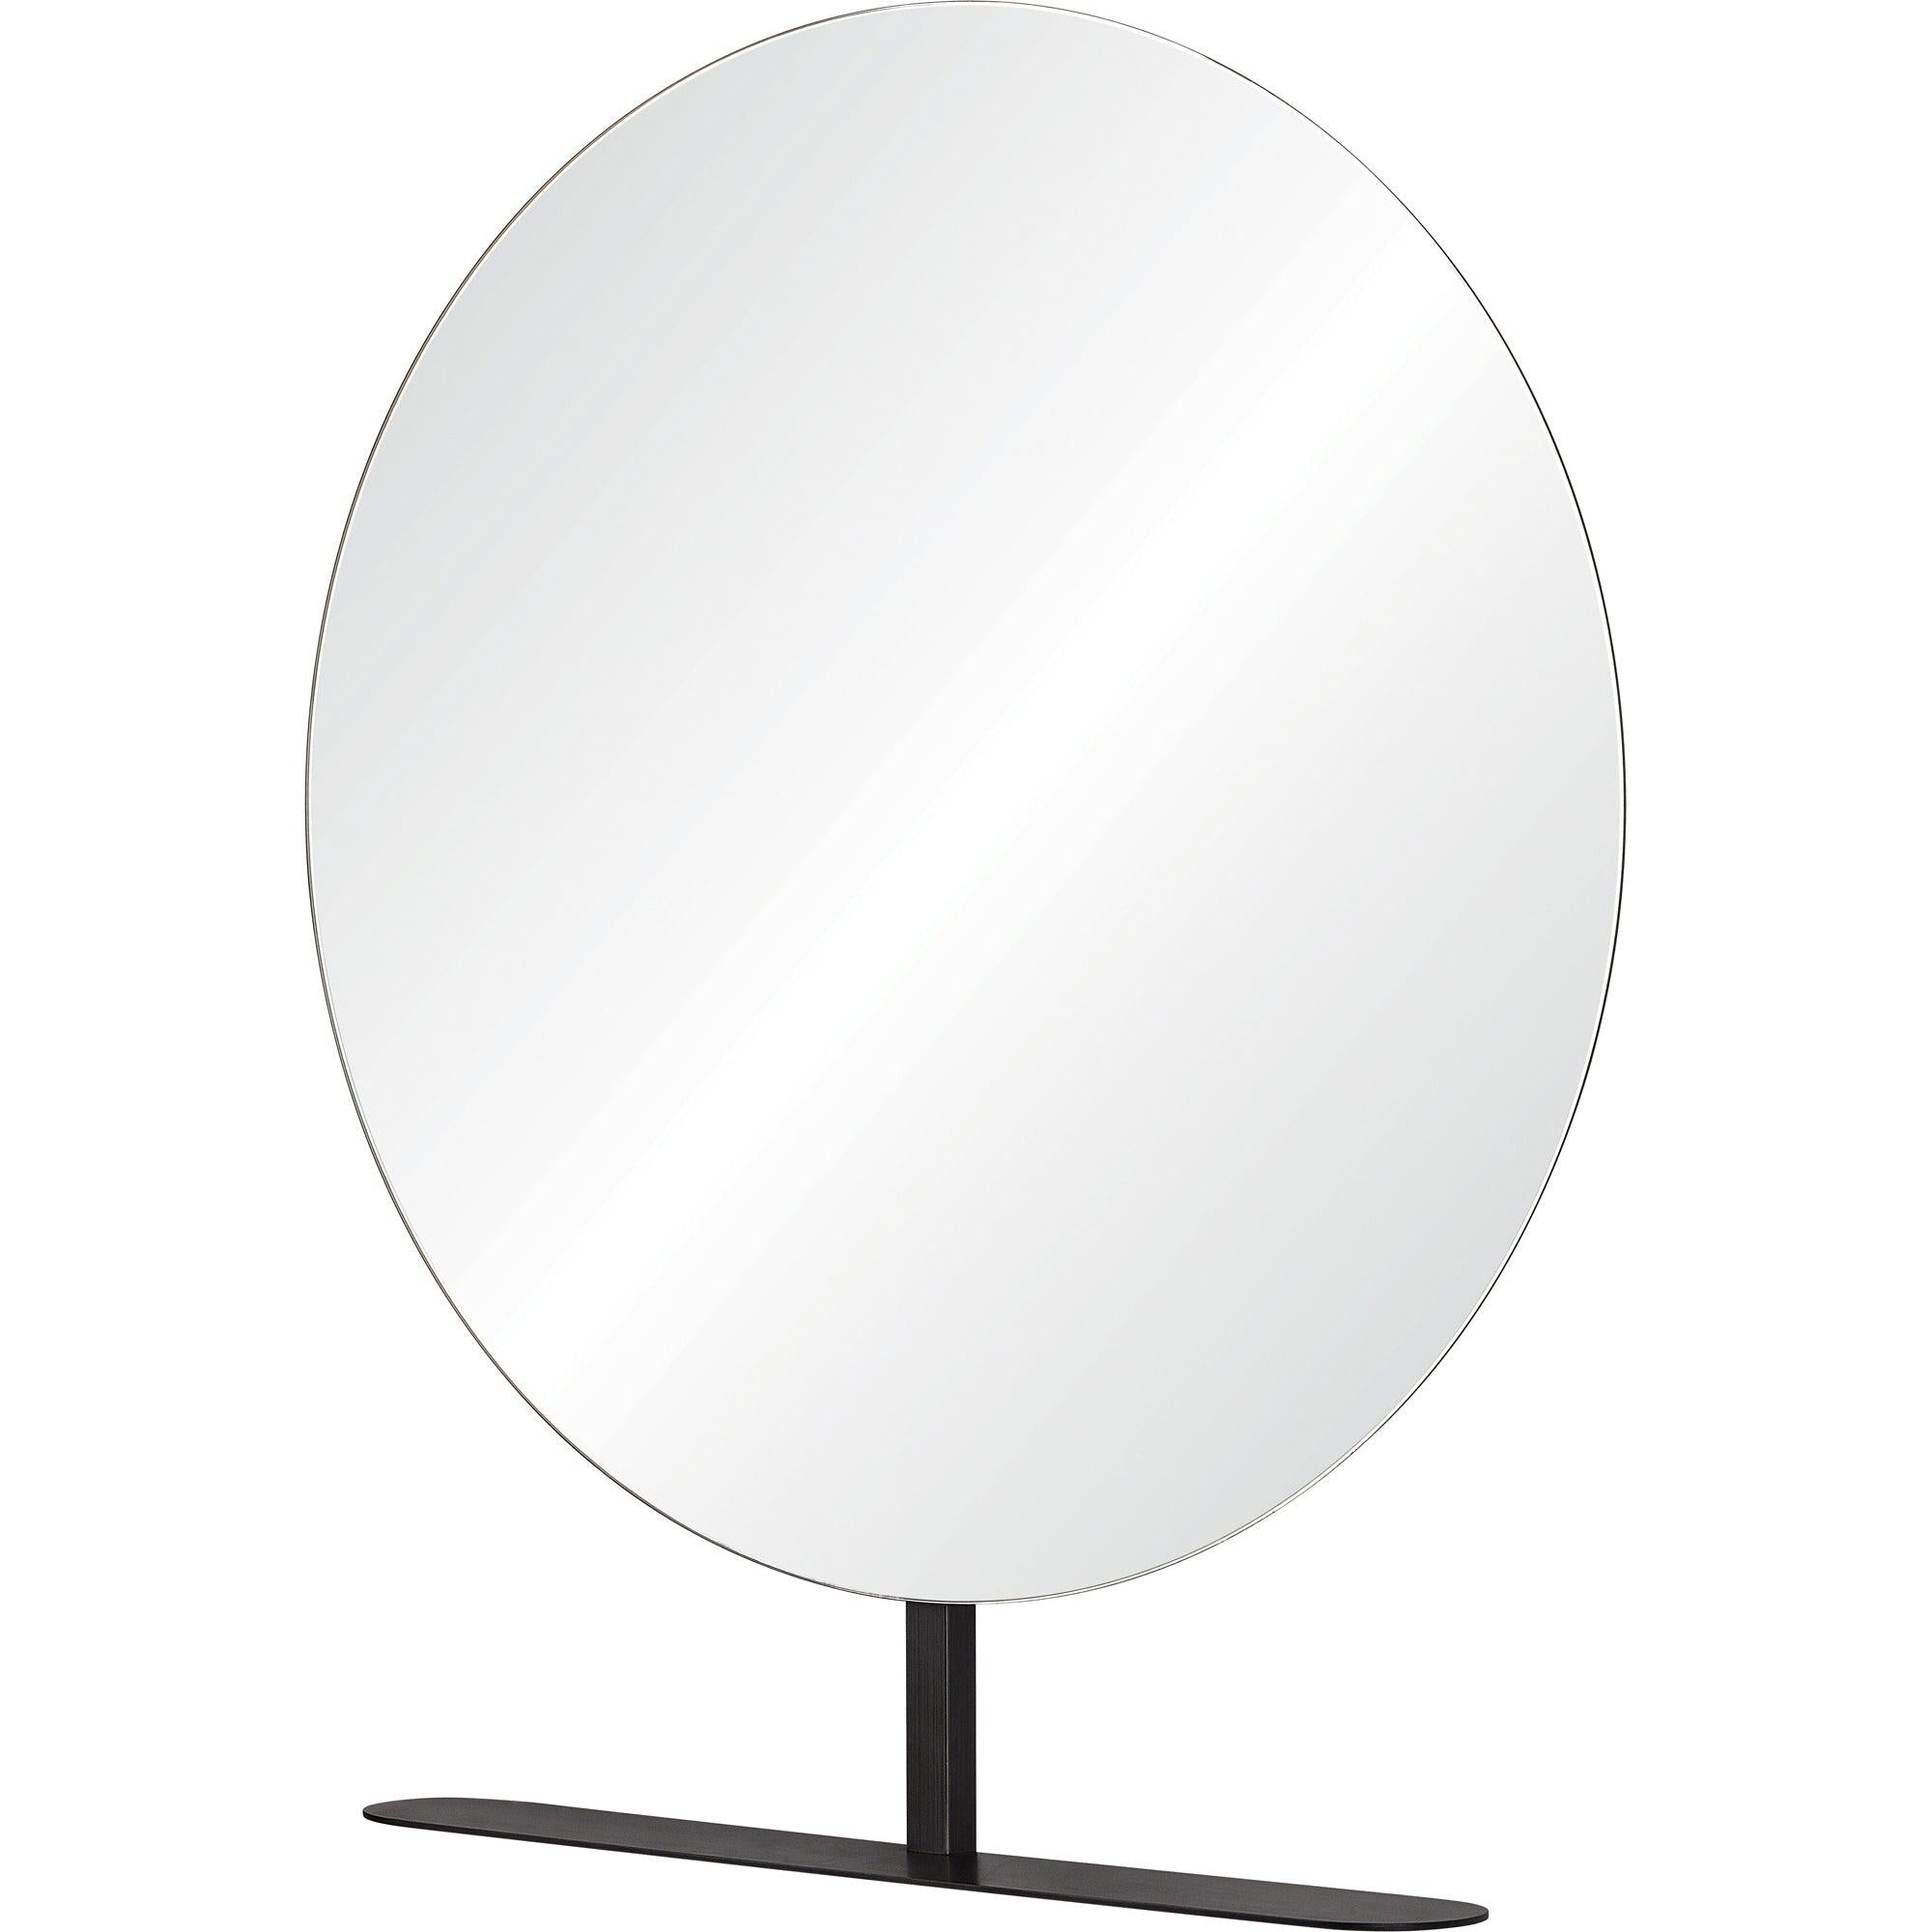 Benoit Mirror - Reimagine Designs - Mirror, Mirrors, new